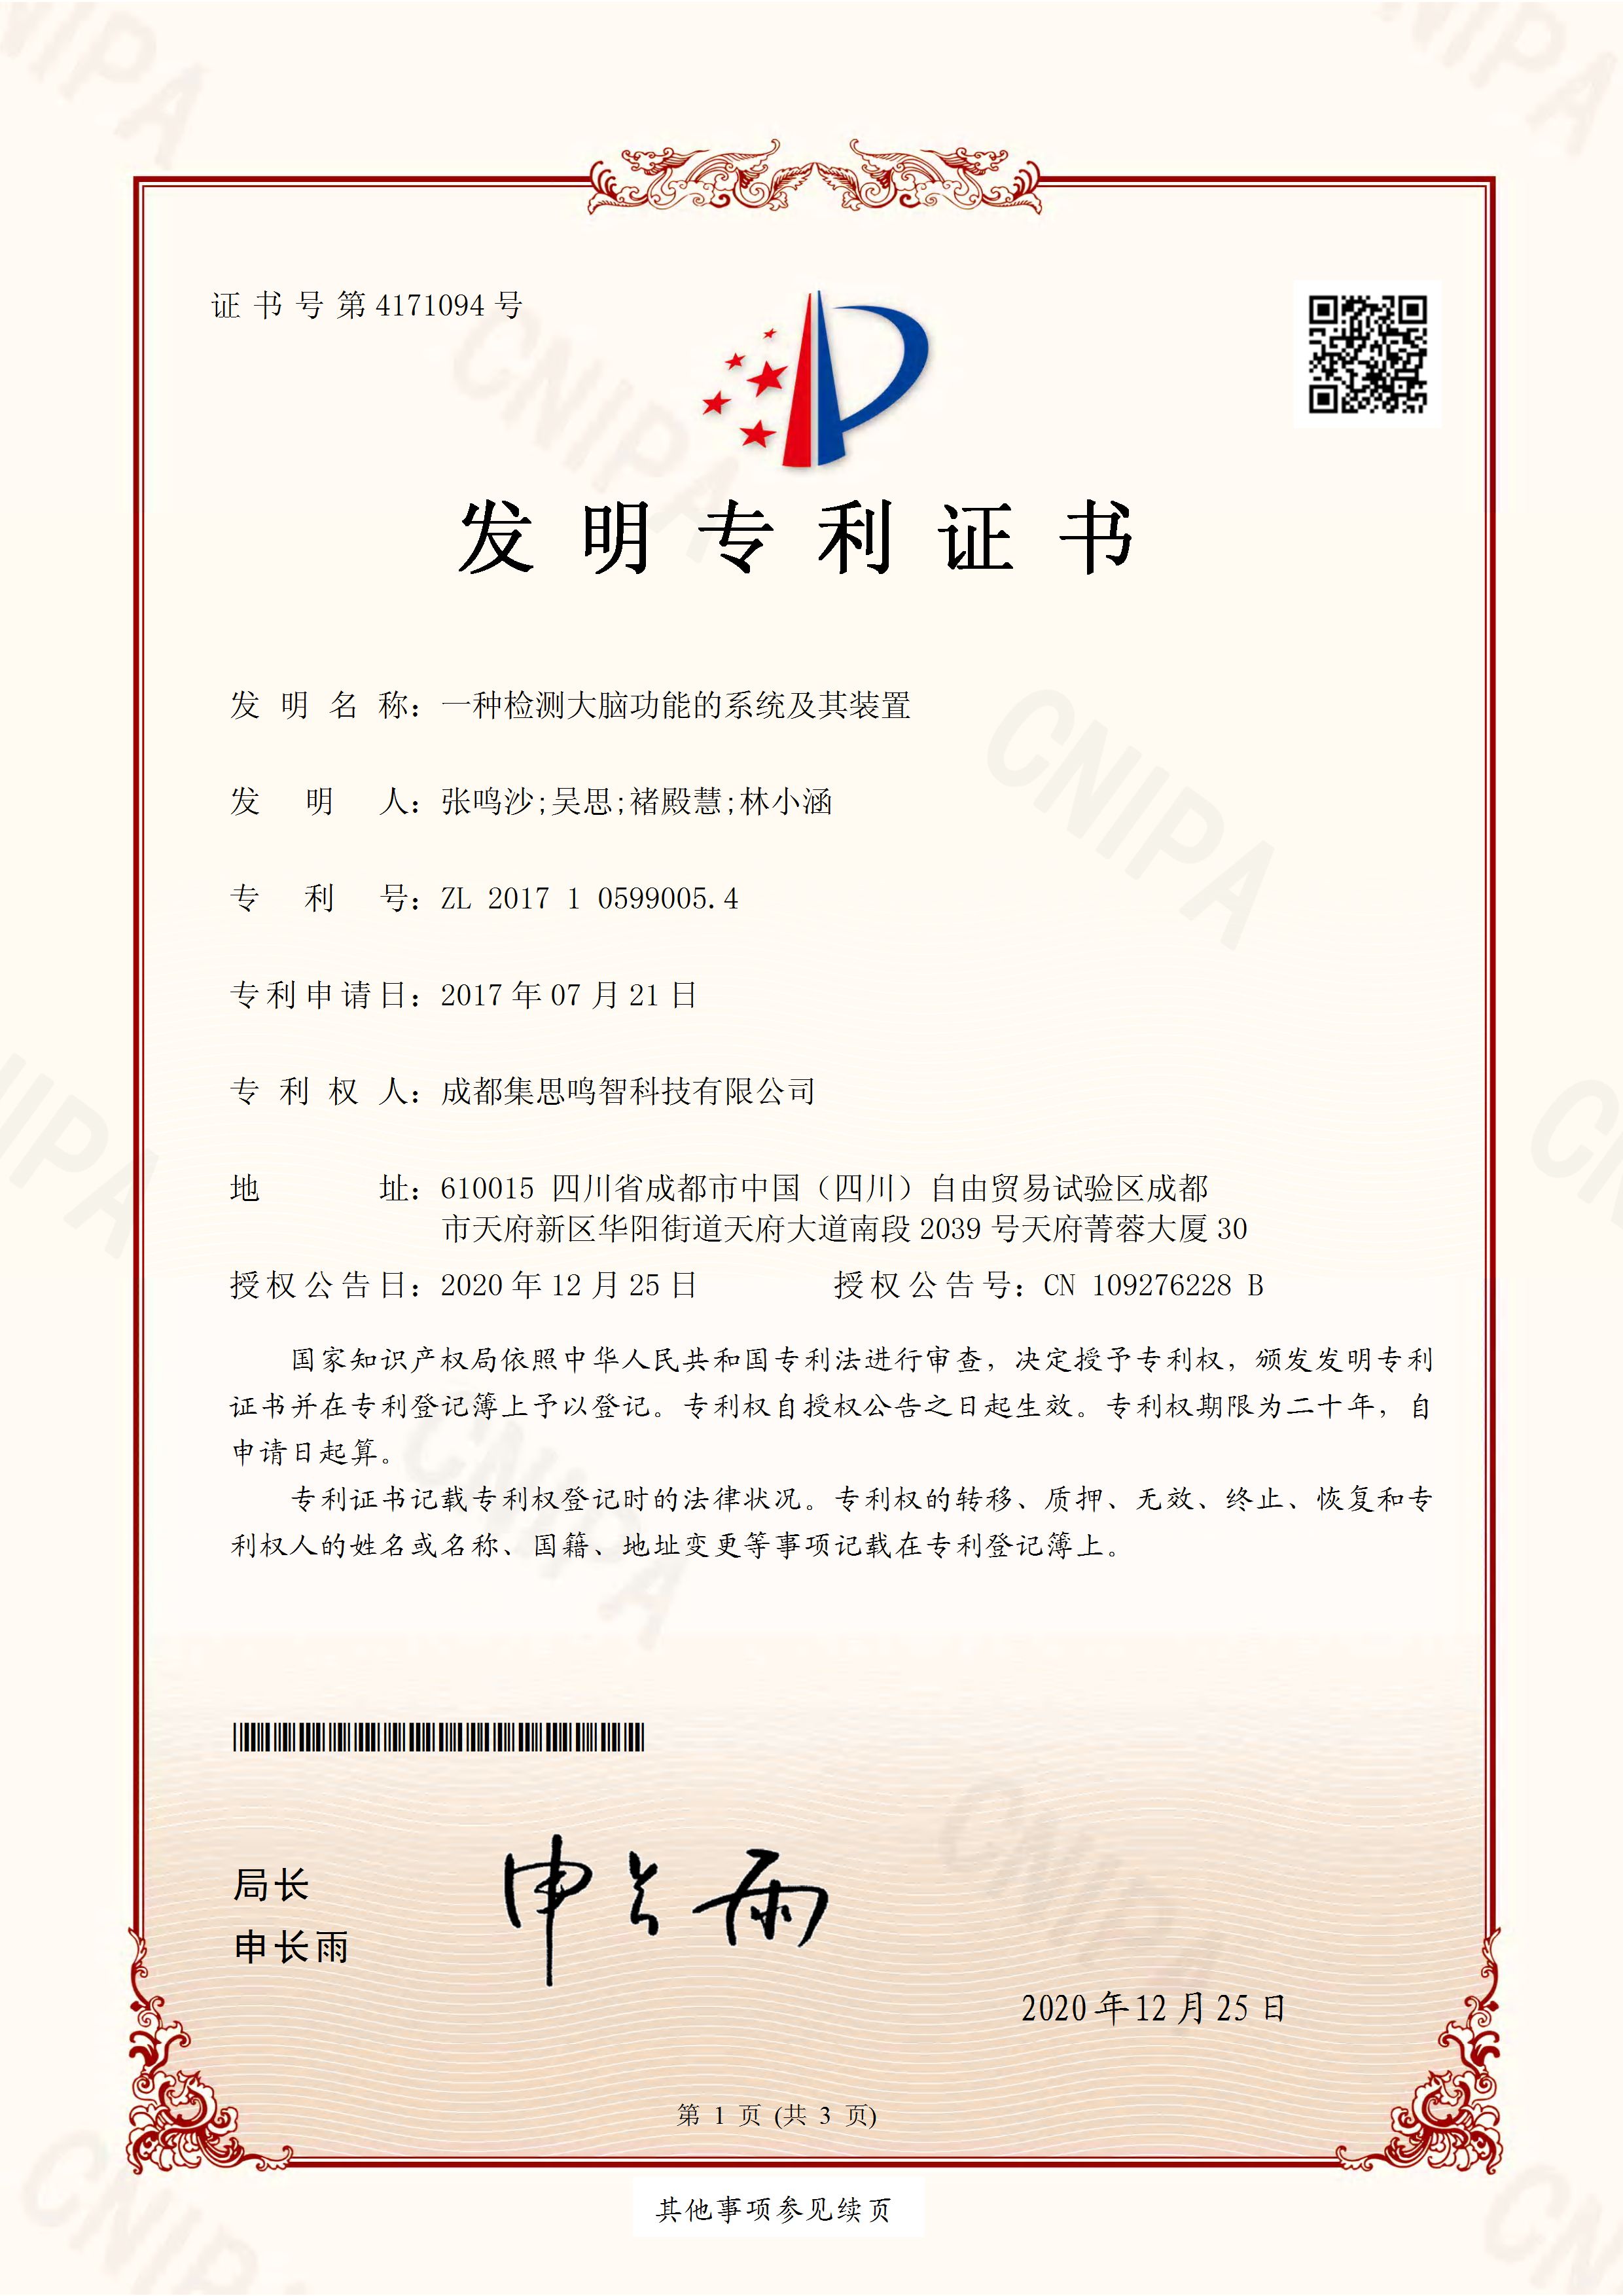 2017105990054中国专利证书_Page_1.jpg